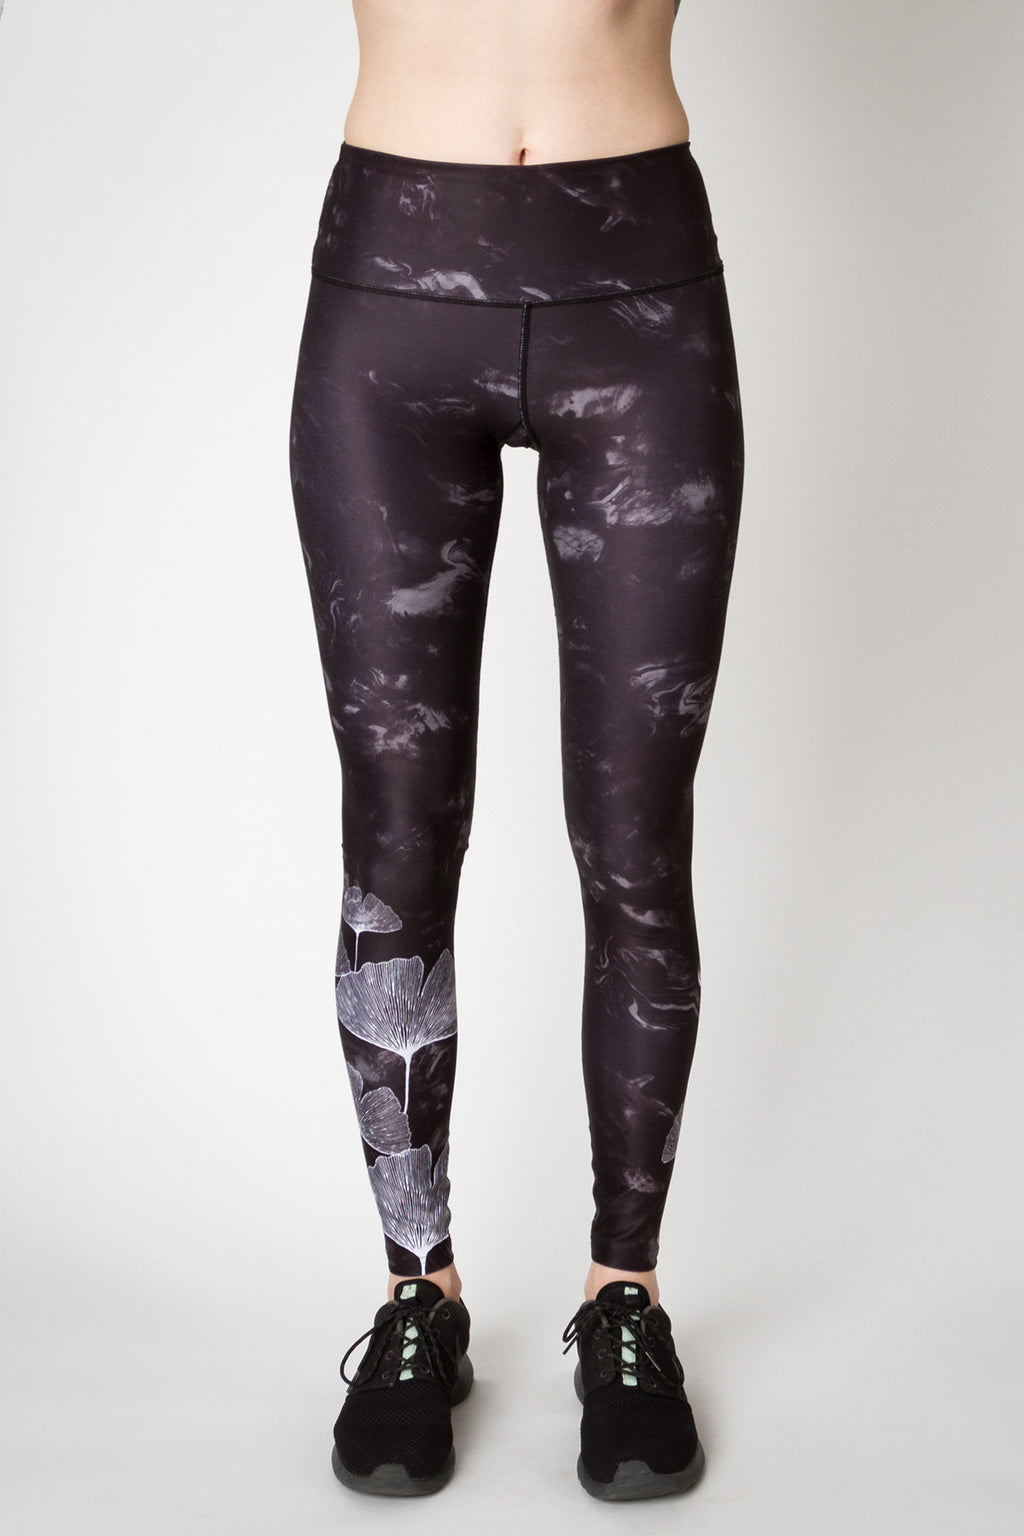 Buy Enamor Athleisure E258 Women's Dry Fit Butter Soft Polyester Energy  Legging - Black online